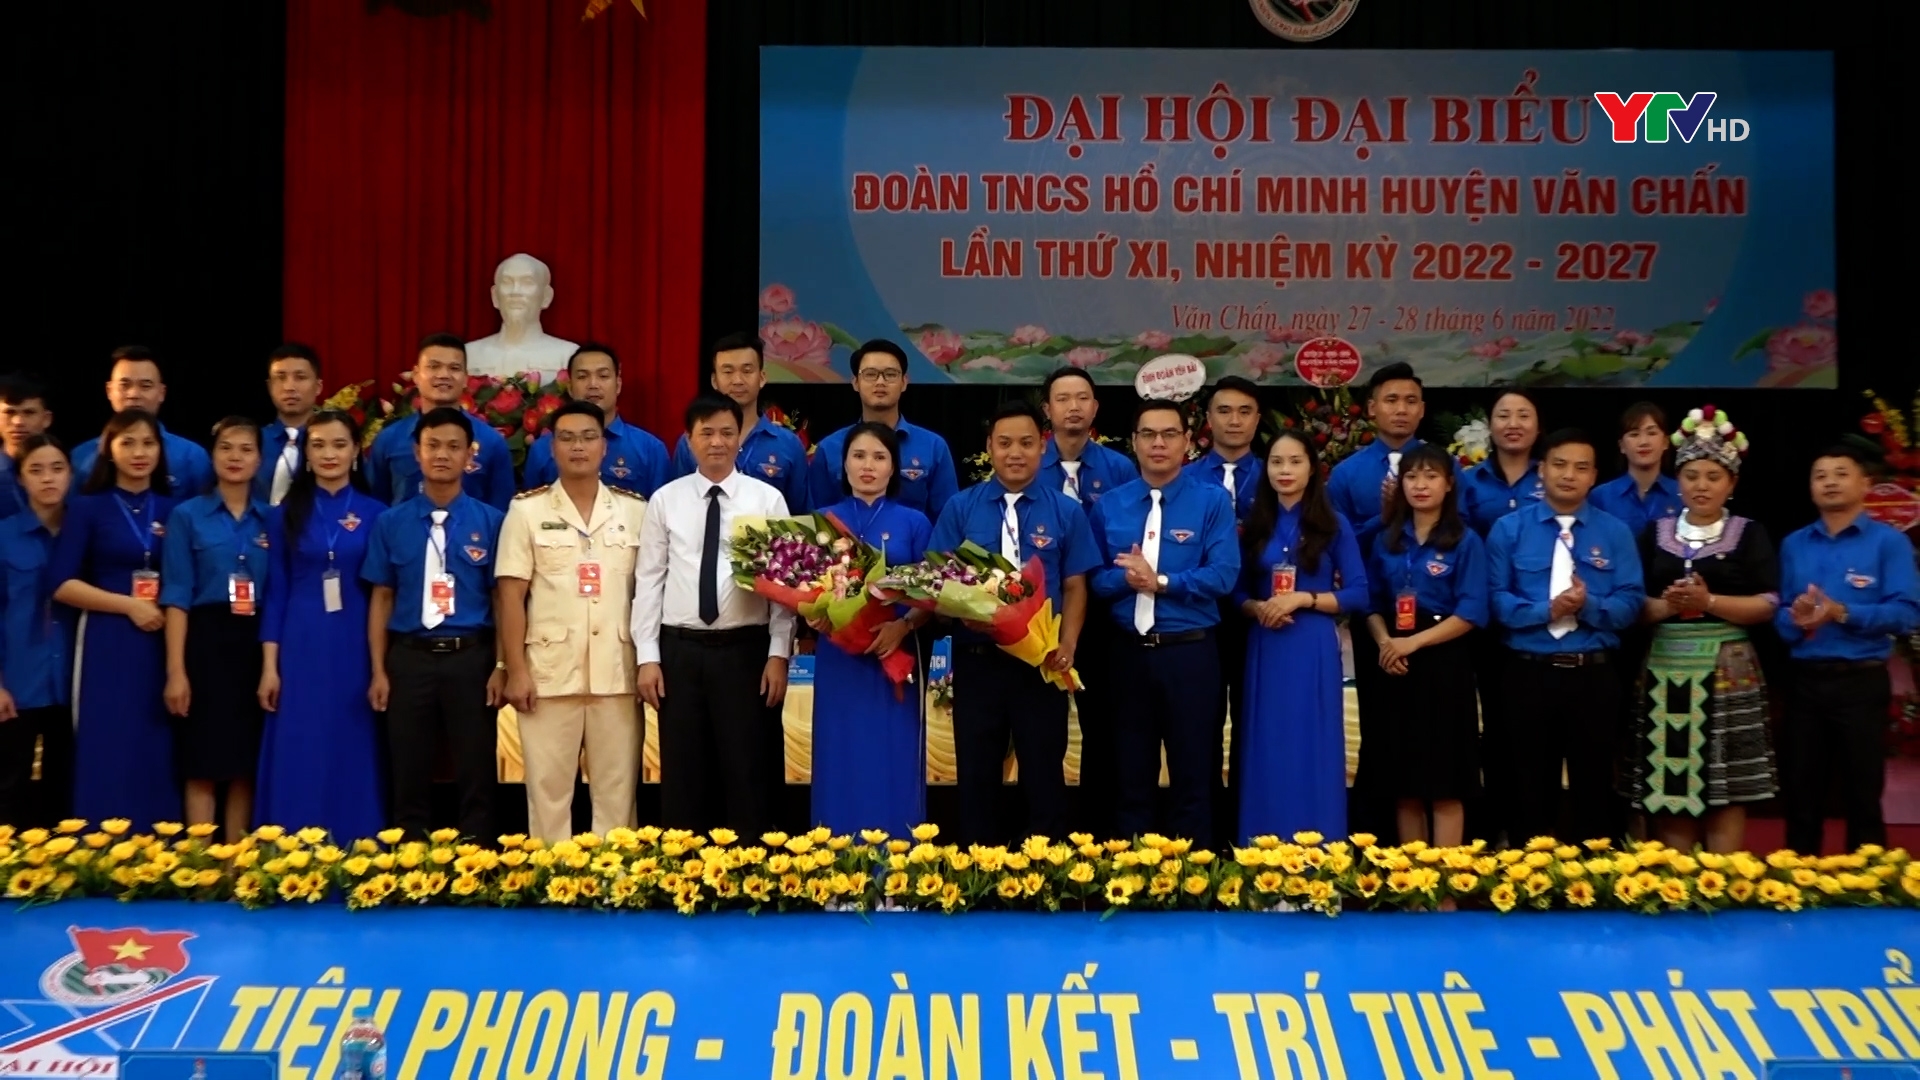 Đại hội đại biểu Đoàn Thanh niên huyện Văn Chấn nhiệm kỳ 2022 - 2027